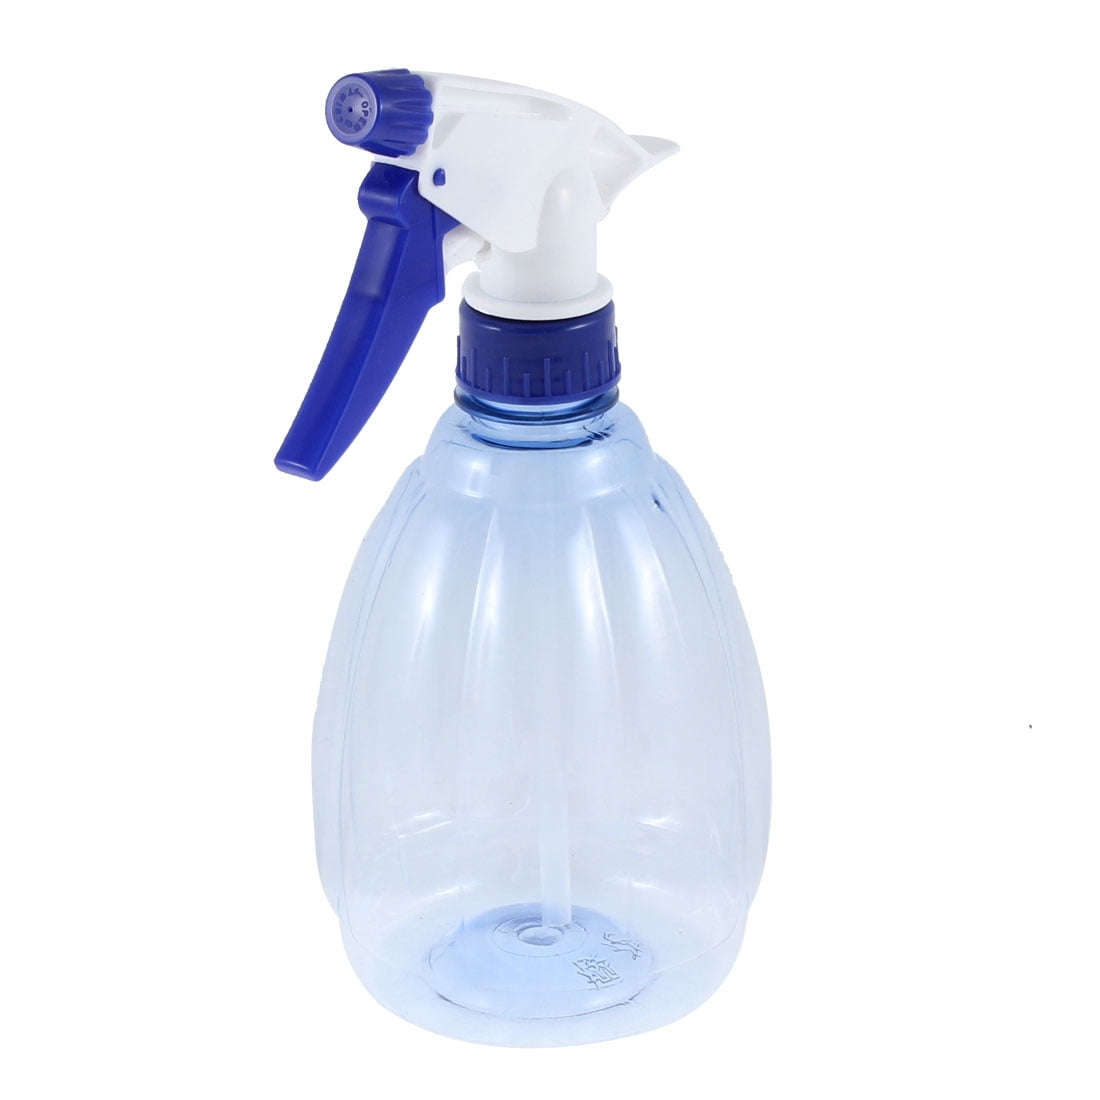 spray bottle of water